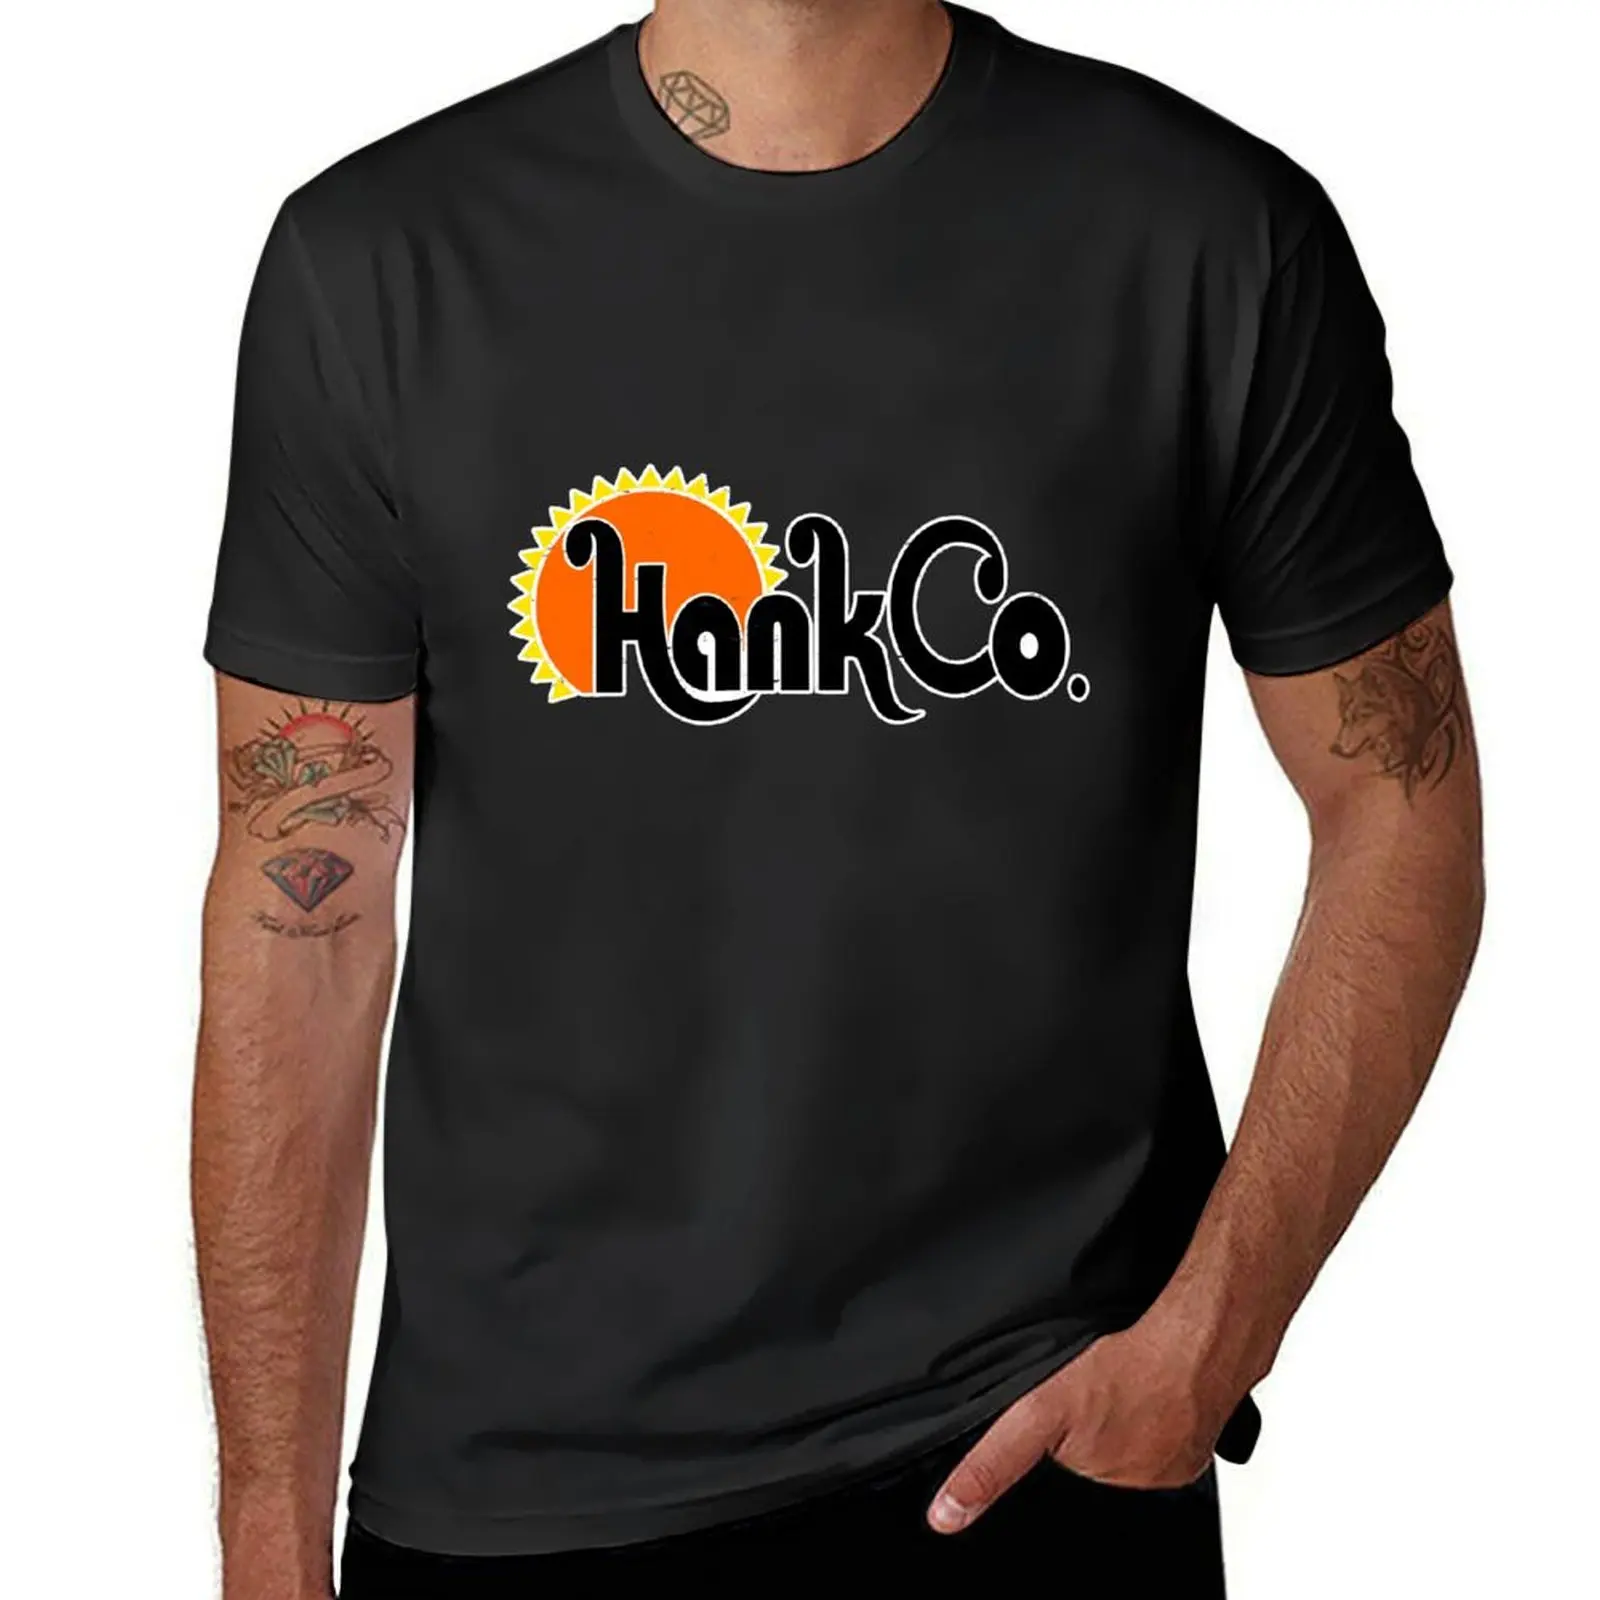 

Футболка Hank Co., милые топы, кавайная одежда, традиционные футболки для мужчин с графическим рисунком